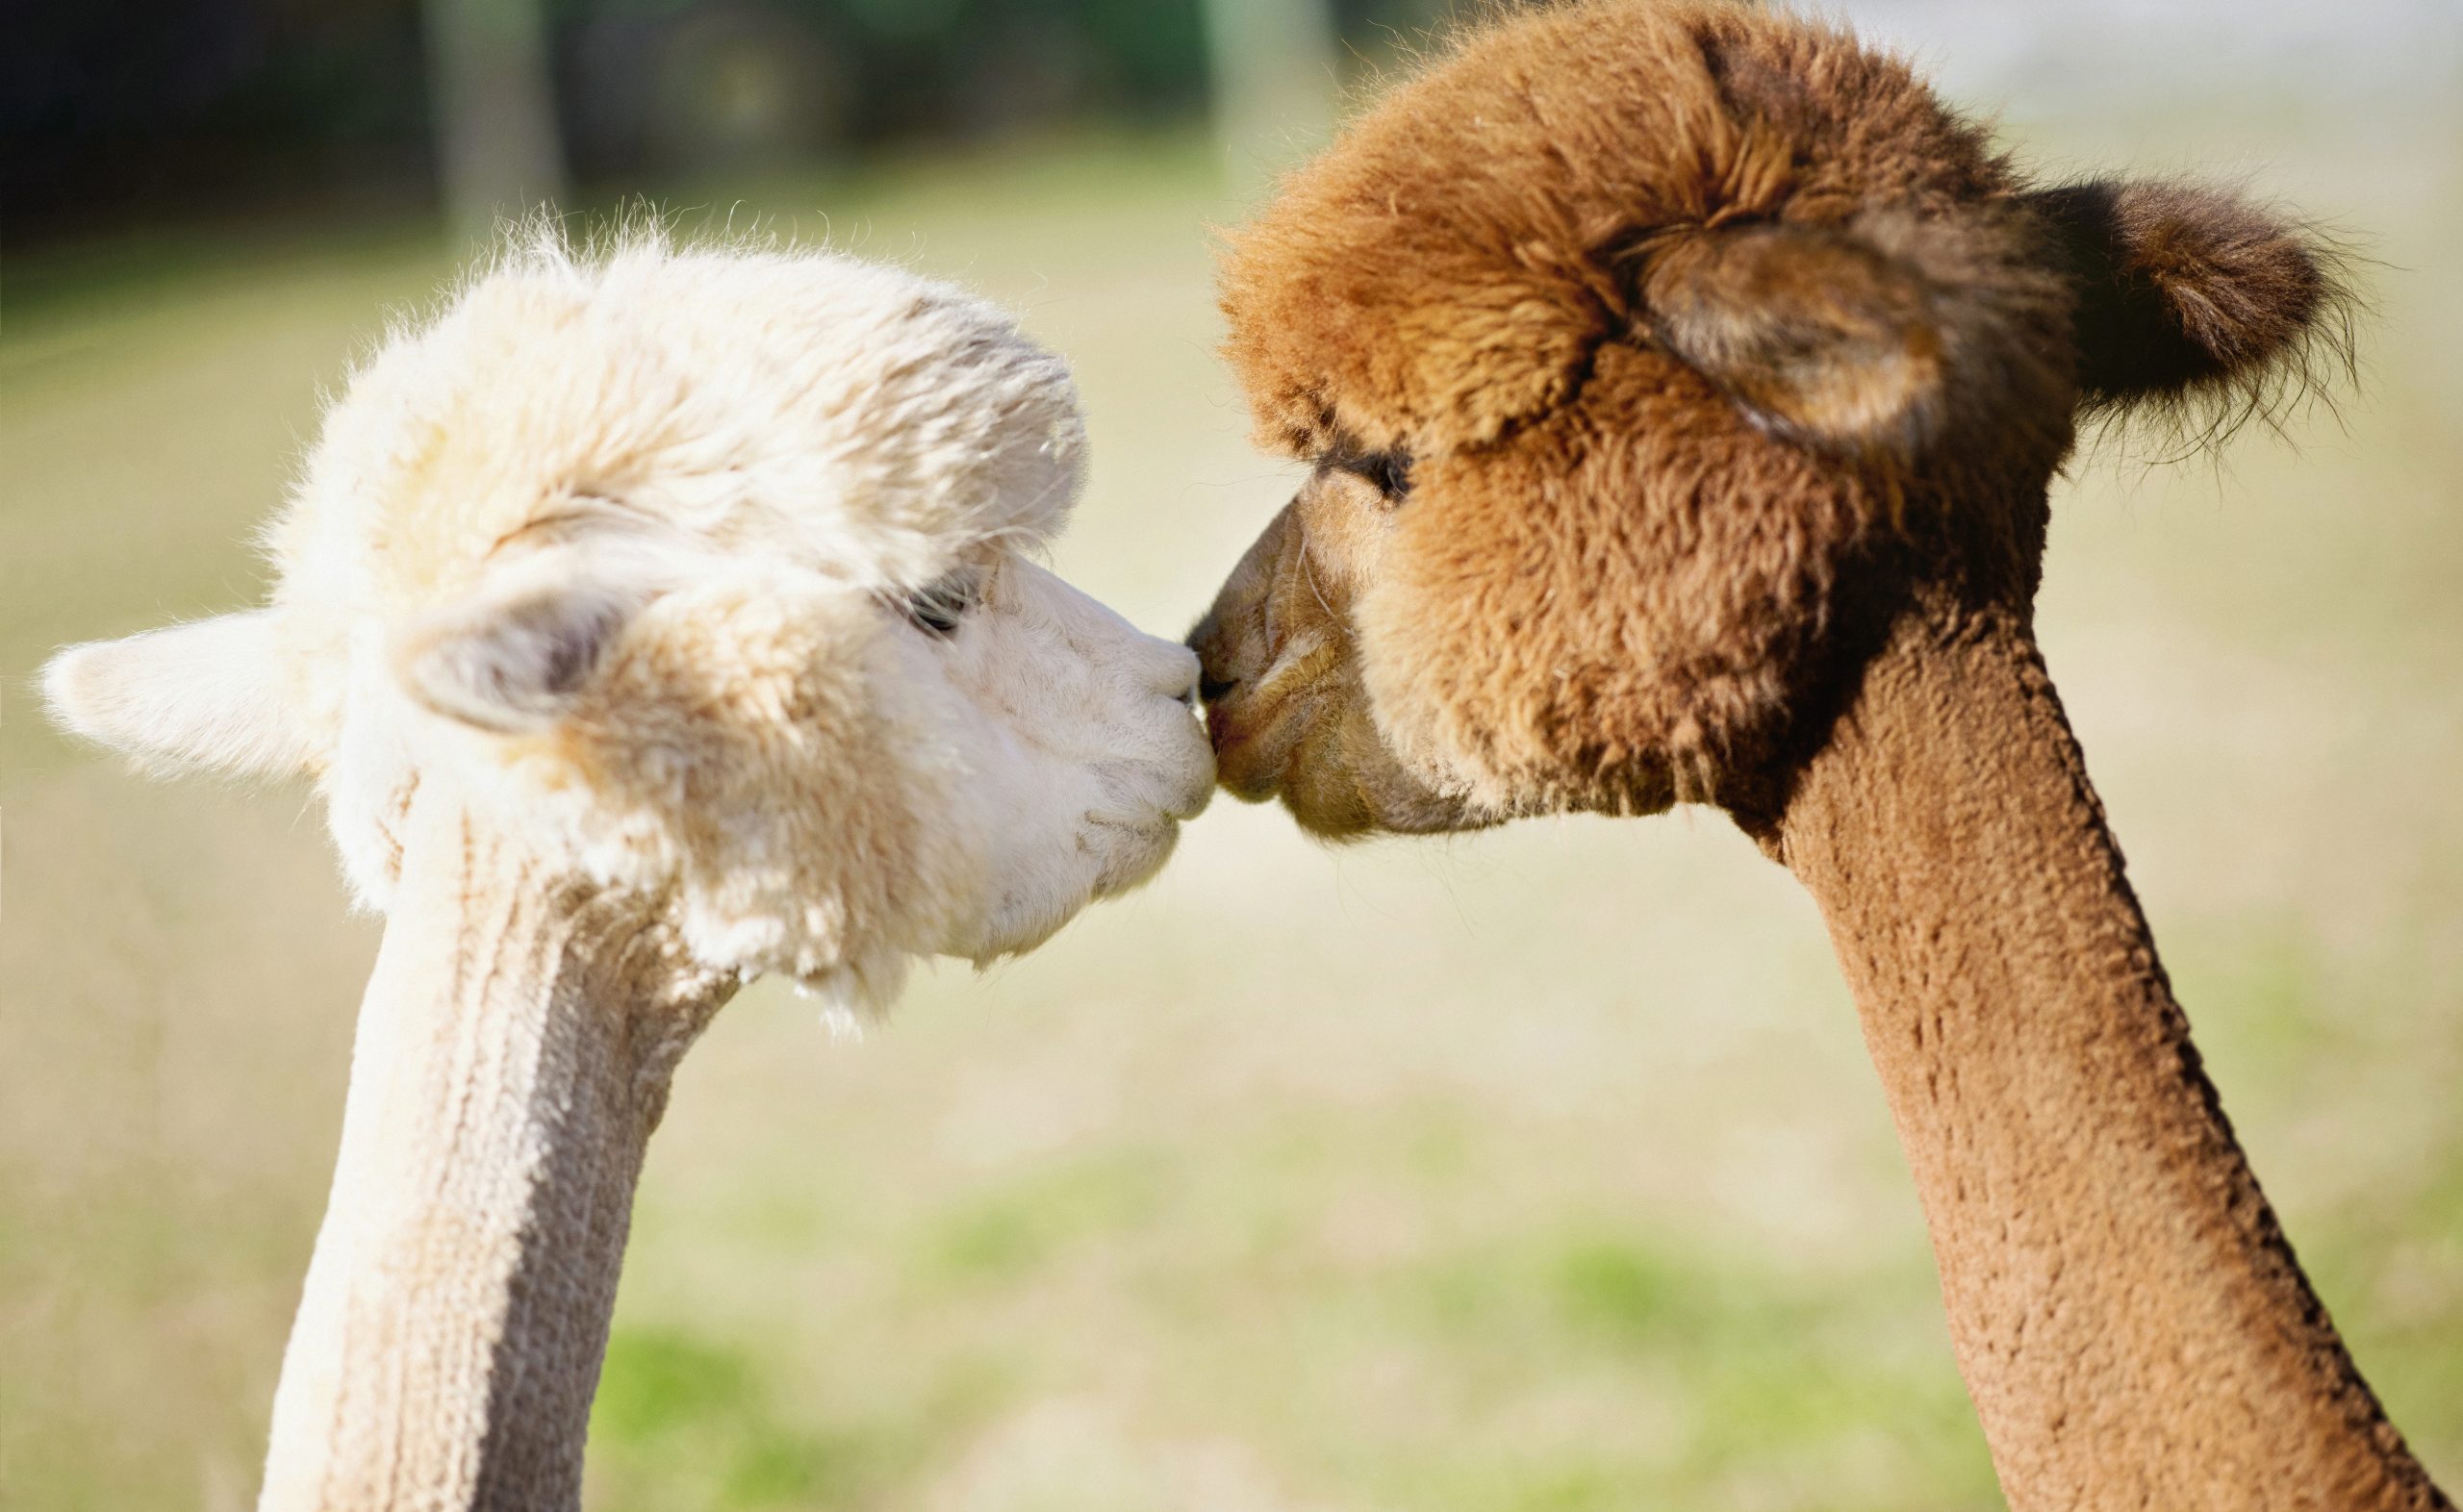 Cute alpacas kissing